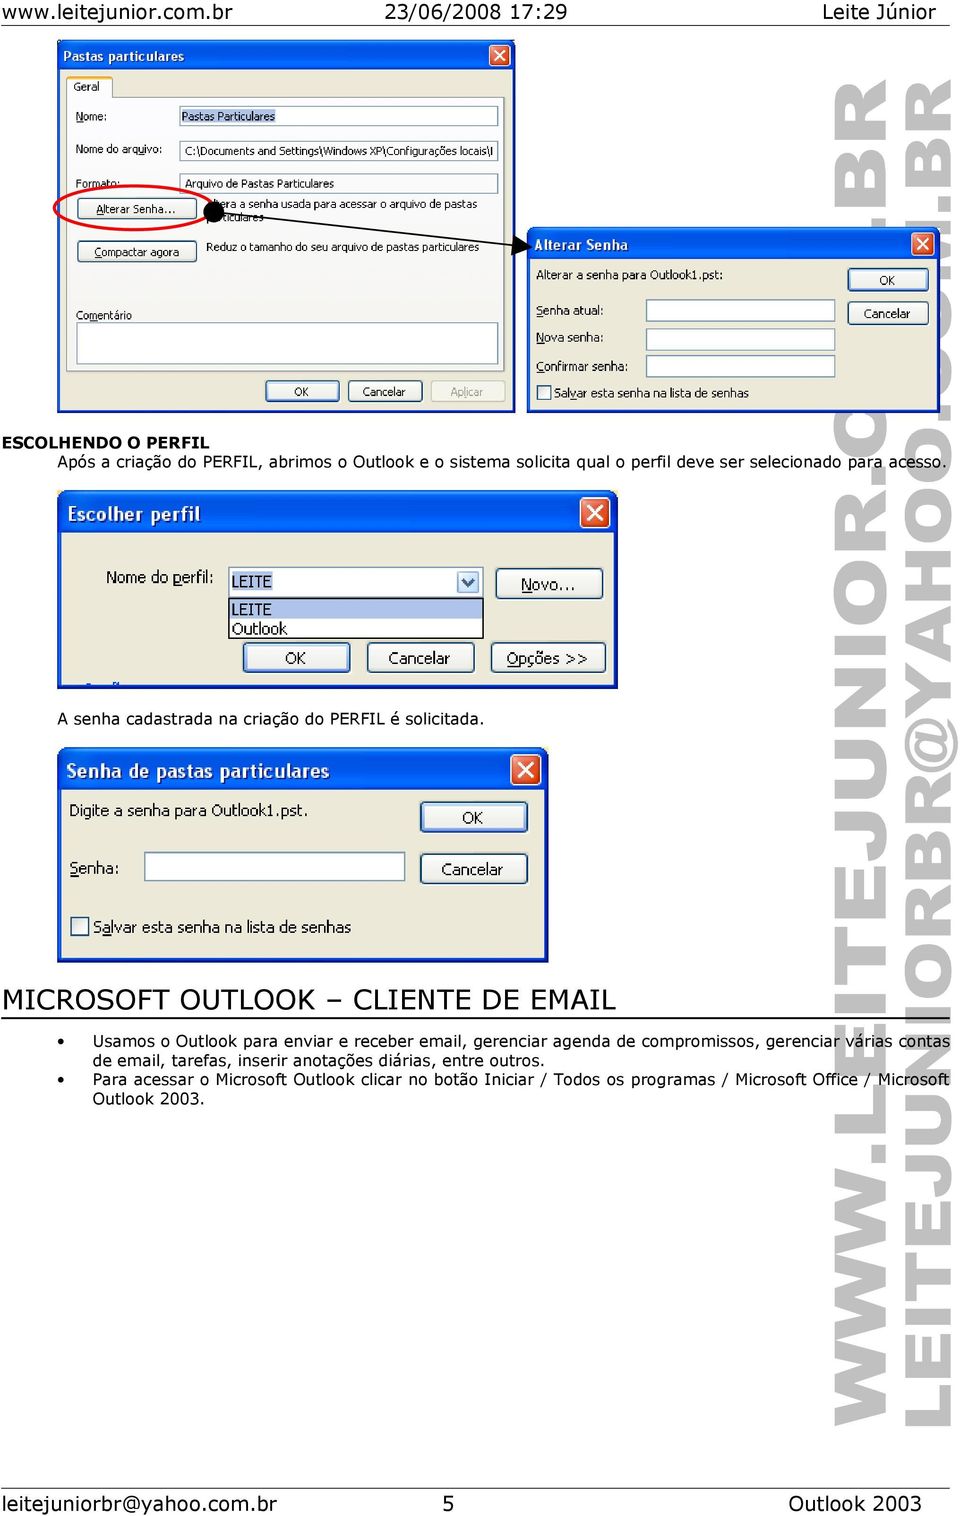 MICROSOFT OUTLOOK CLIENTE DE EMAIL Usamos o Outlook para enviar e receber email, gerenciar agenda de compromissos, gerenciar